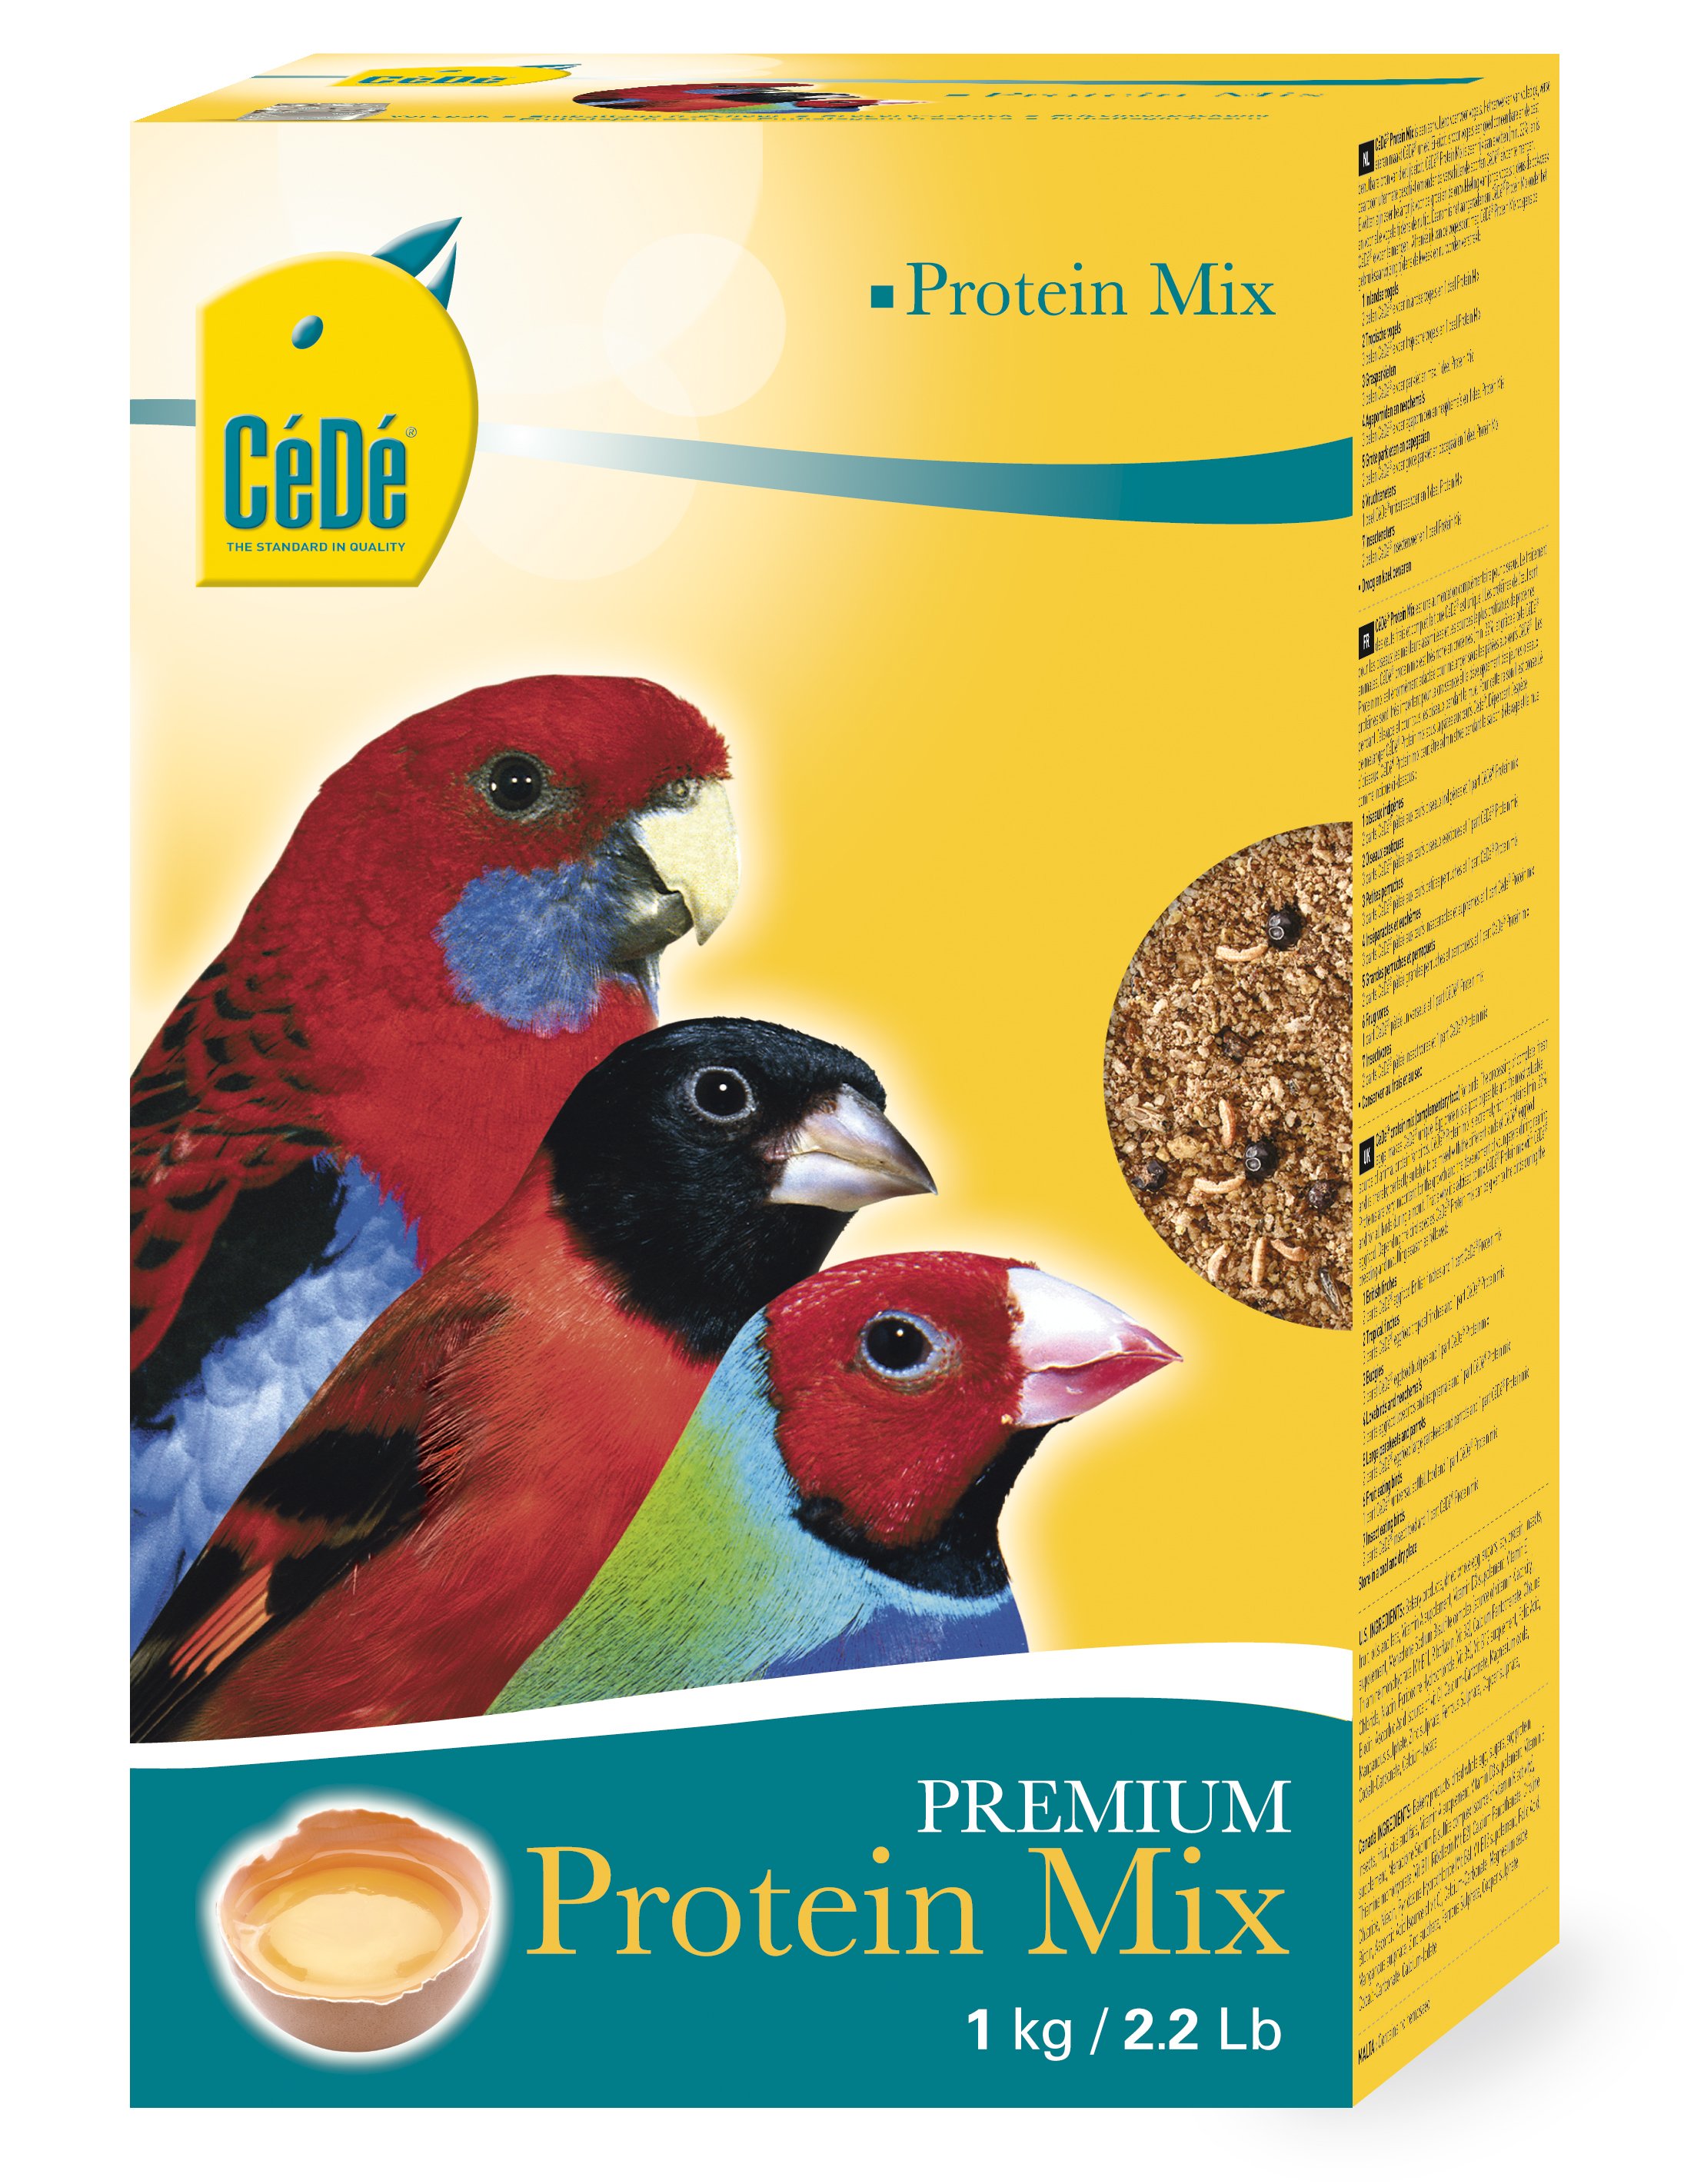 Cédé protein mix - Product shot